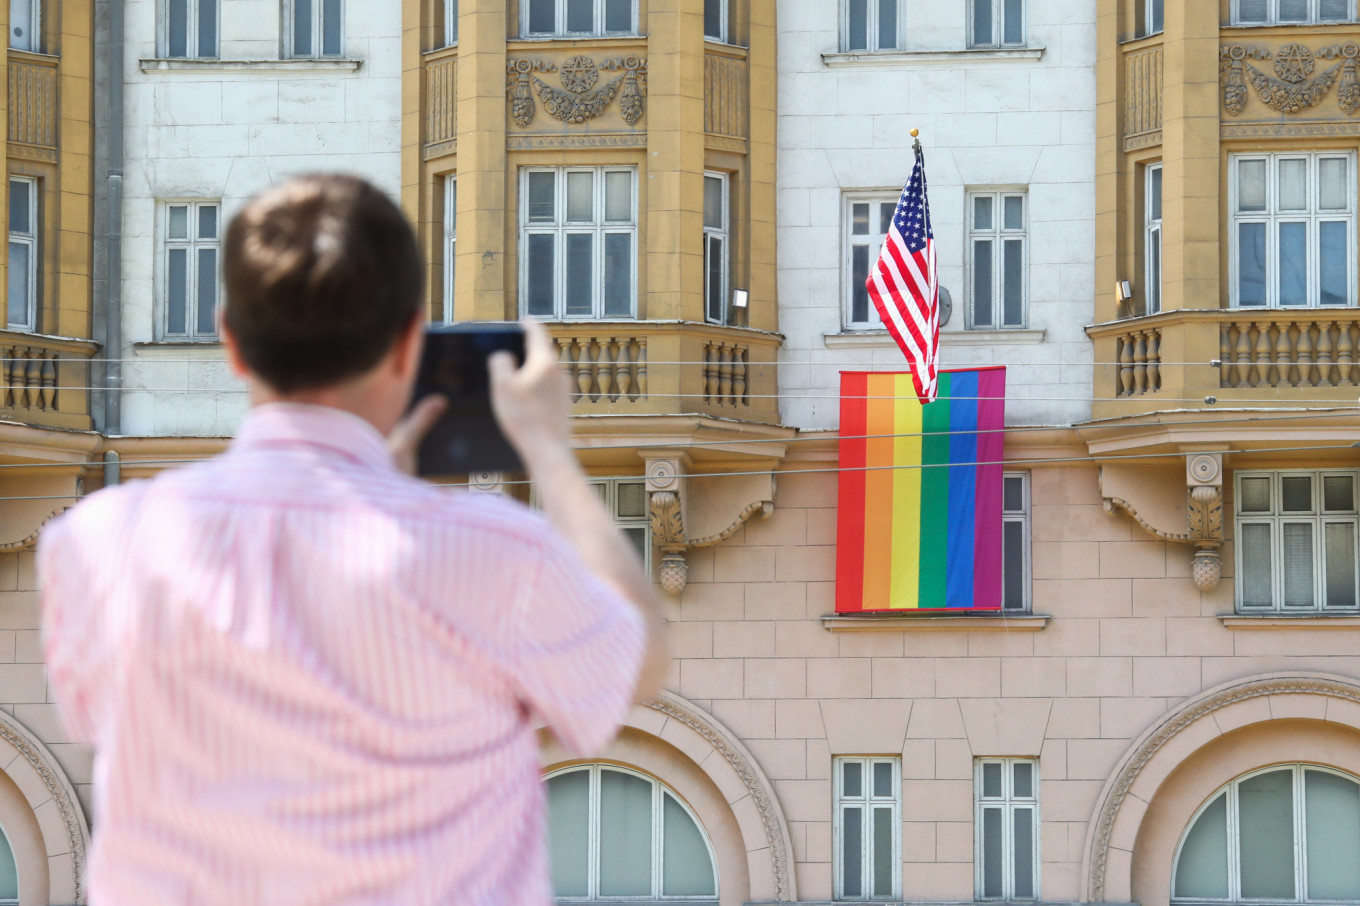 Putin Mocks U.S. Embassy Rainbow Flag